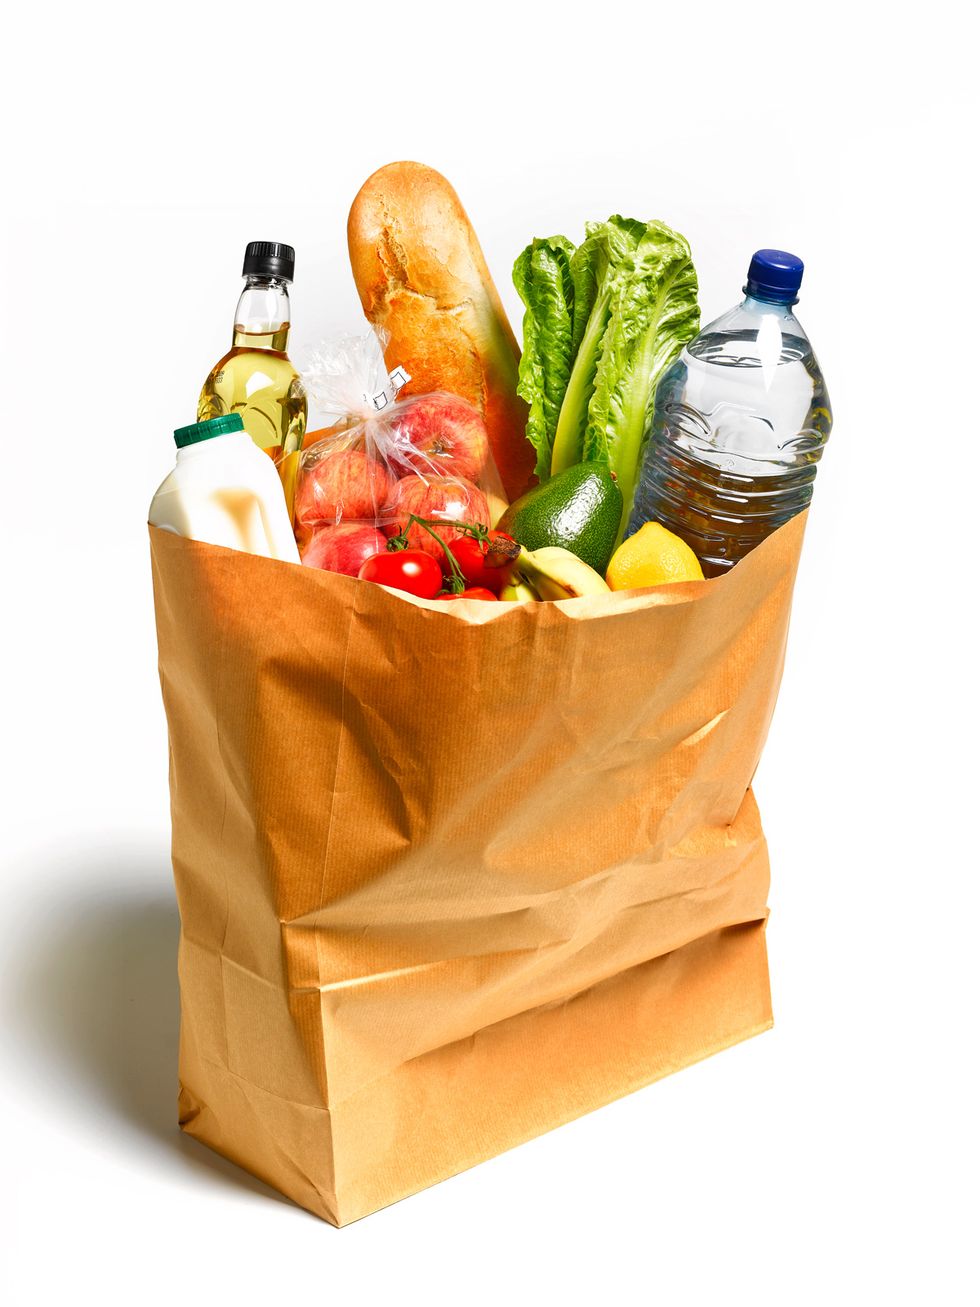 Ingredient, Food, Produce, Vegetable, Bottle, Natural foods, Carrot, Food group, Vegan nutrition, Leaf vegetable, 